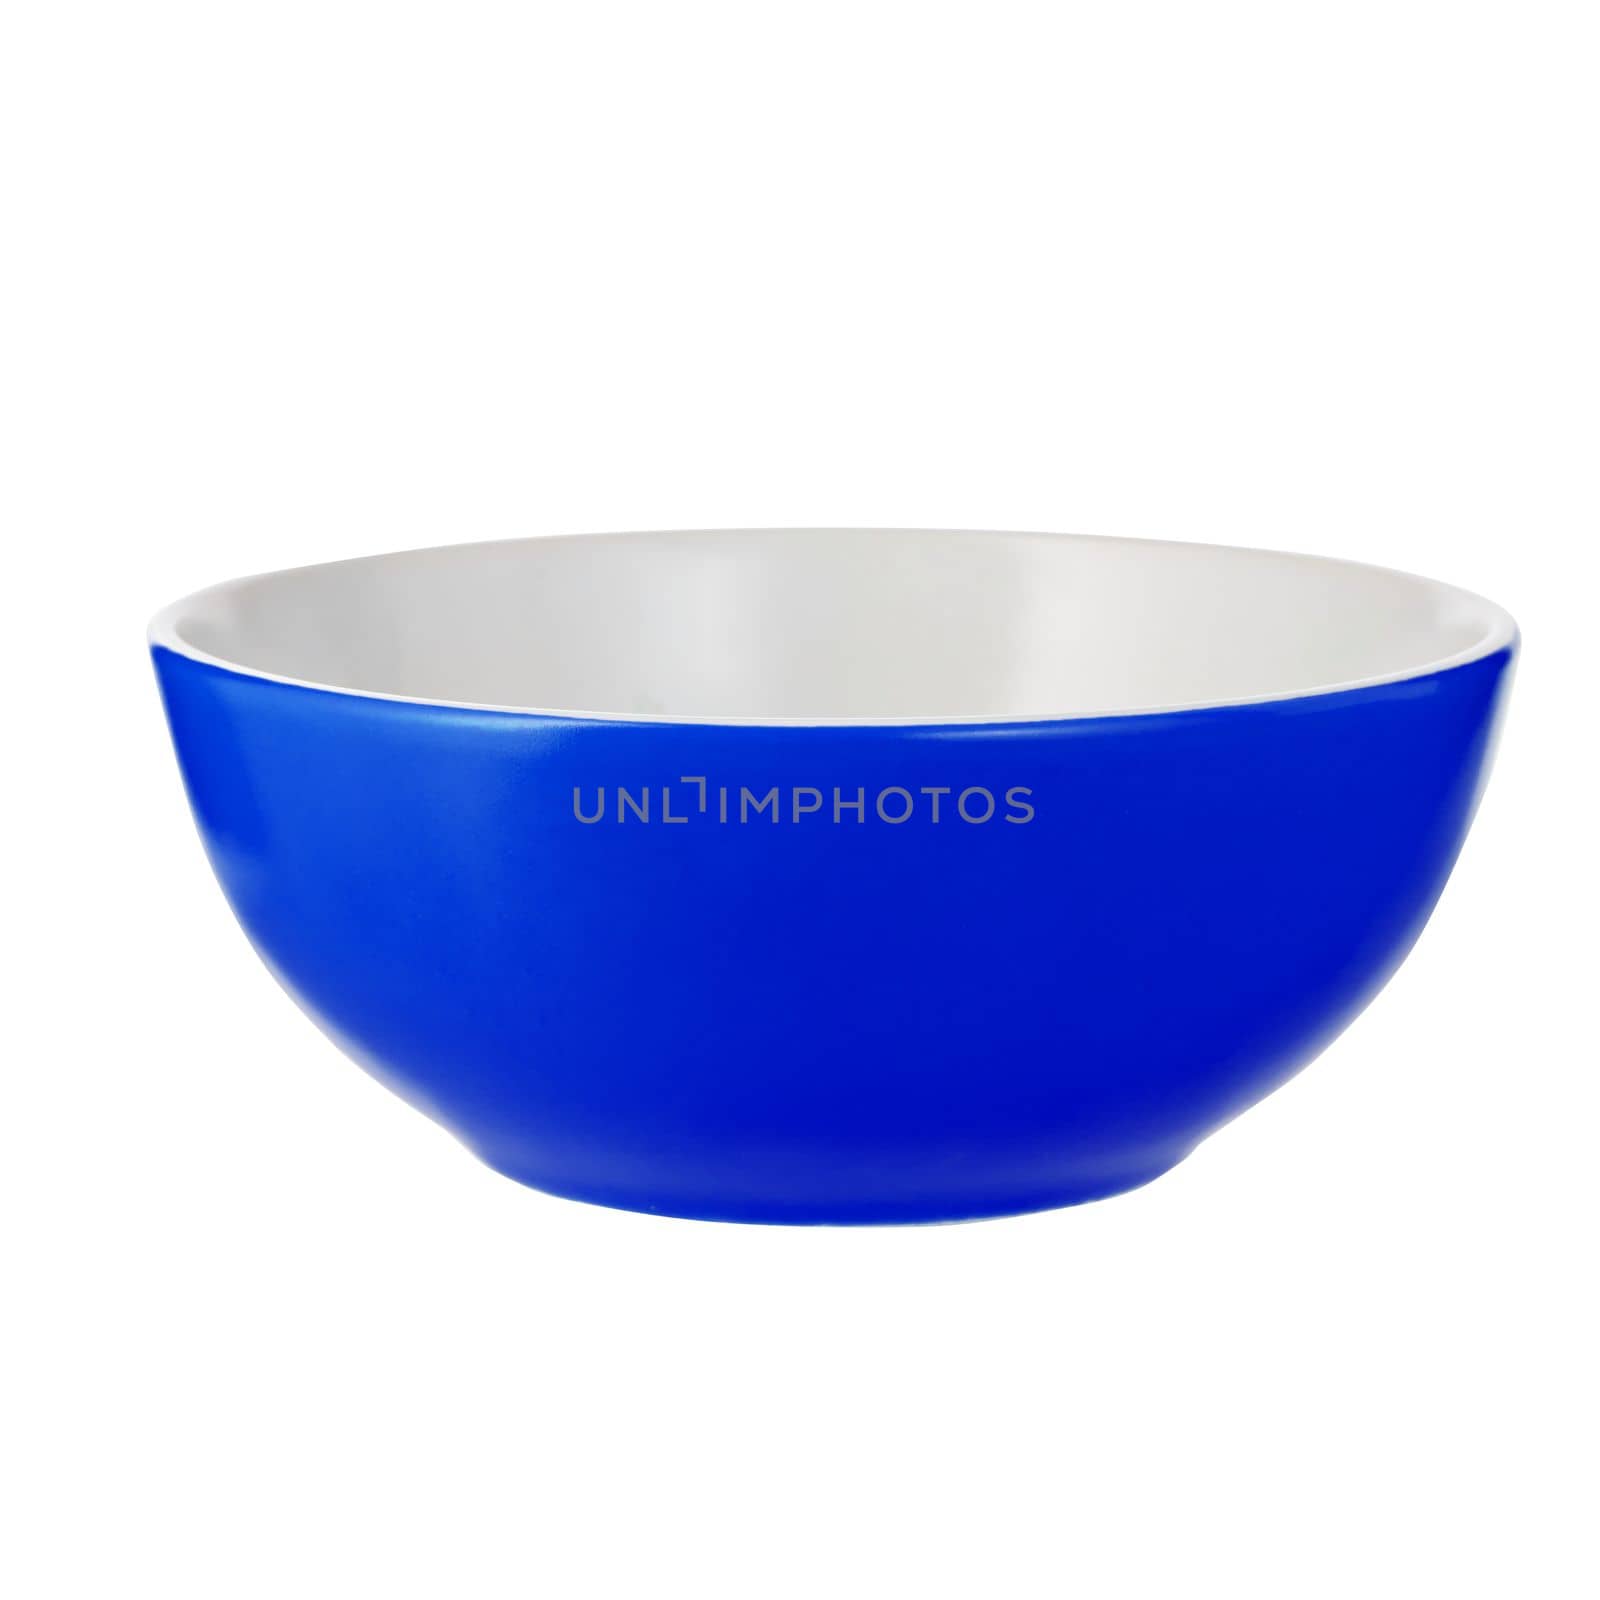 Empty blue ceramic bowl isolated on white background